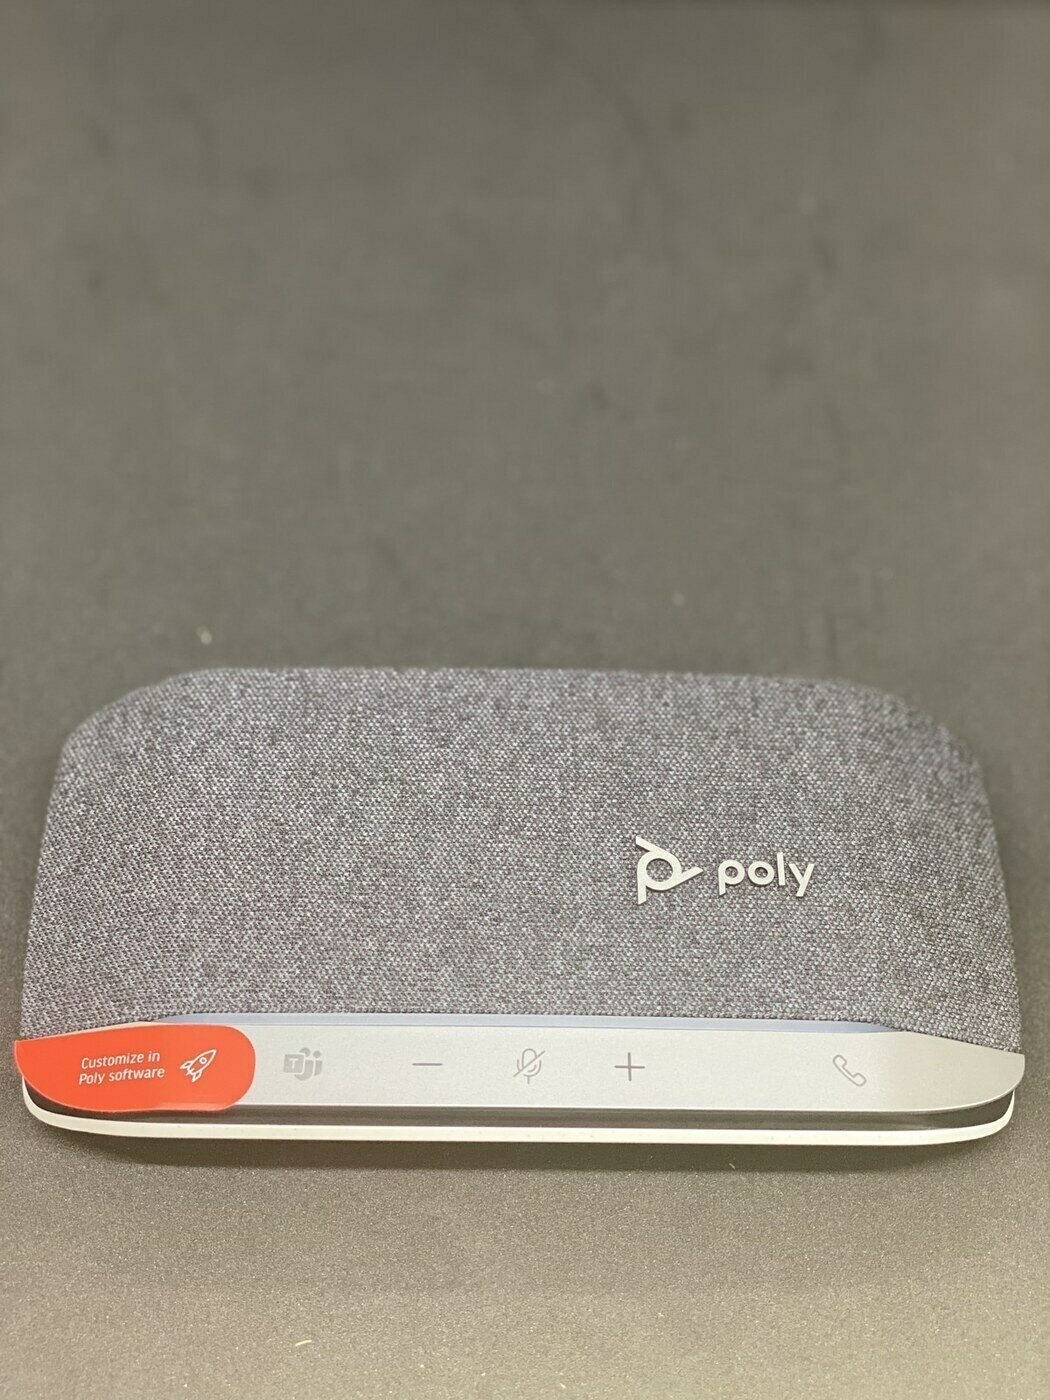 Cпикерфон Plantronics Poly Sync 20 для ПК и мобильных устройств Bluetooth USB-A портативная музыкальная колонка (216866-01)